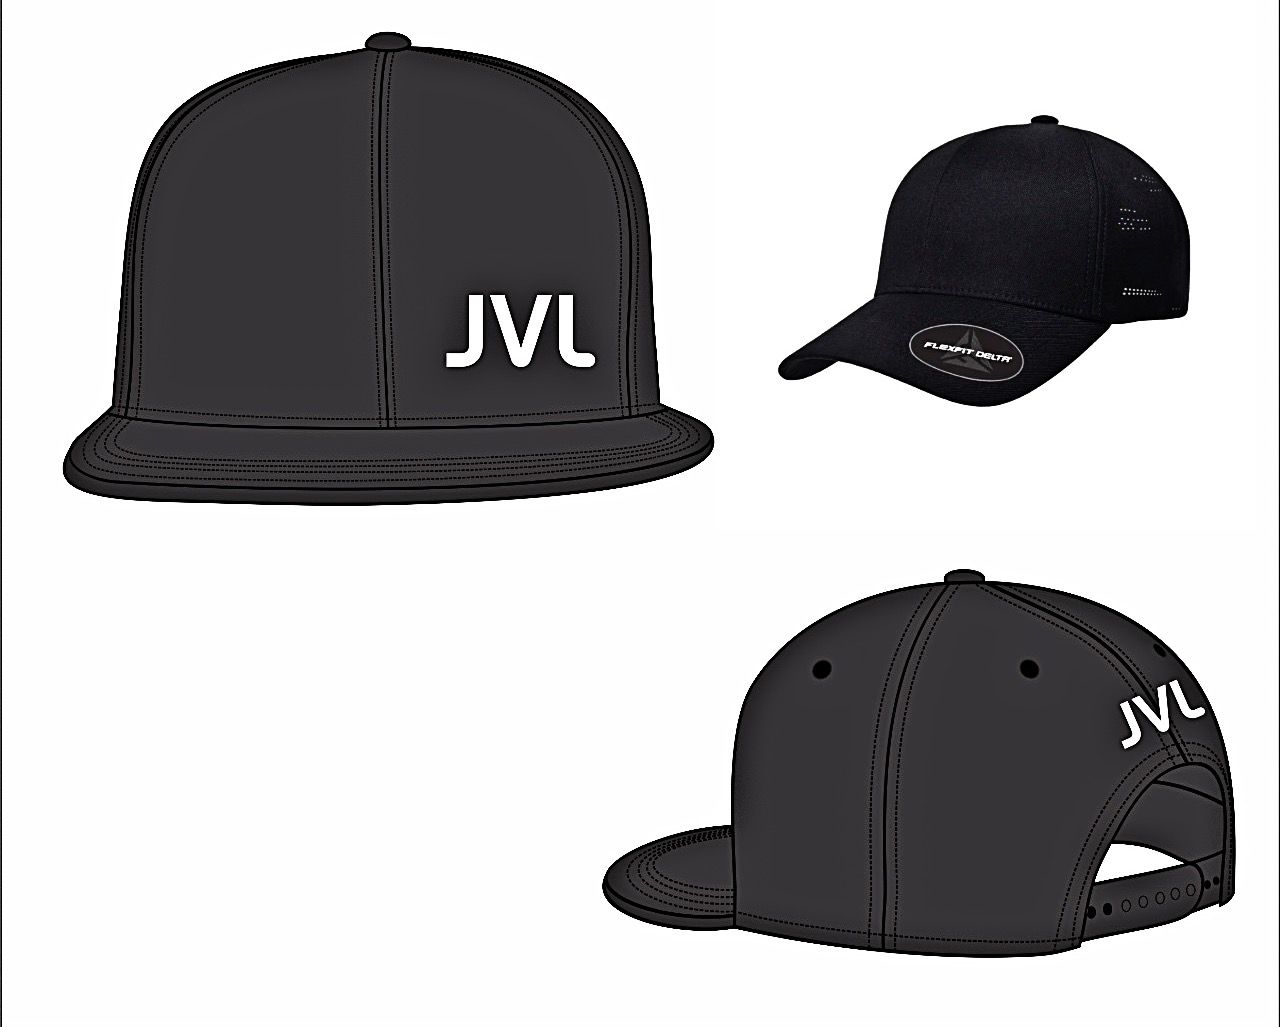 JVL SIGNATURE FLEX CAPS - JVL 